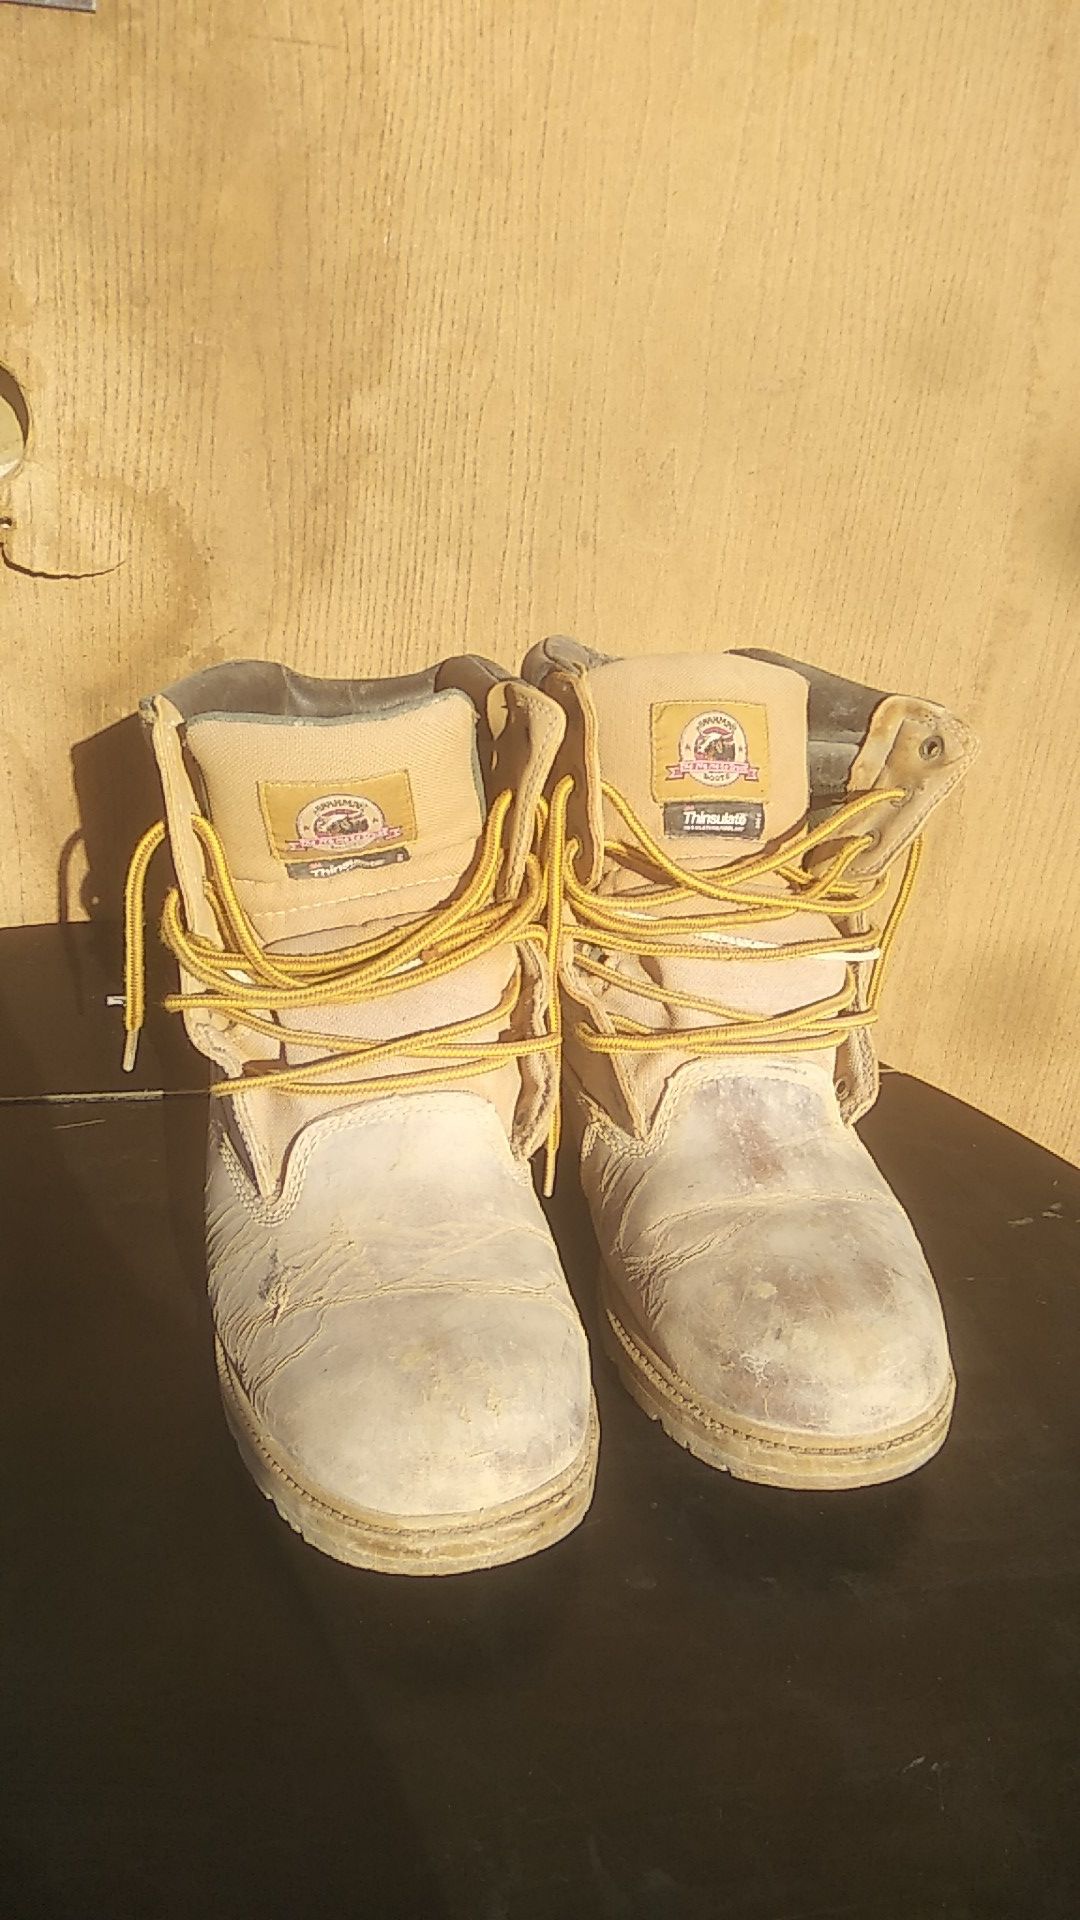 Waterproof Men's Work Boots Size 13